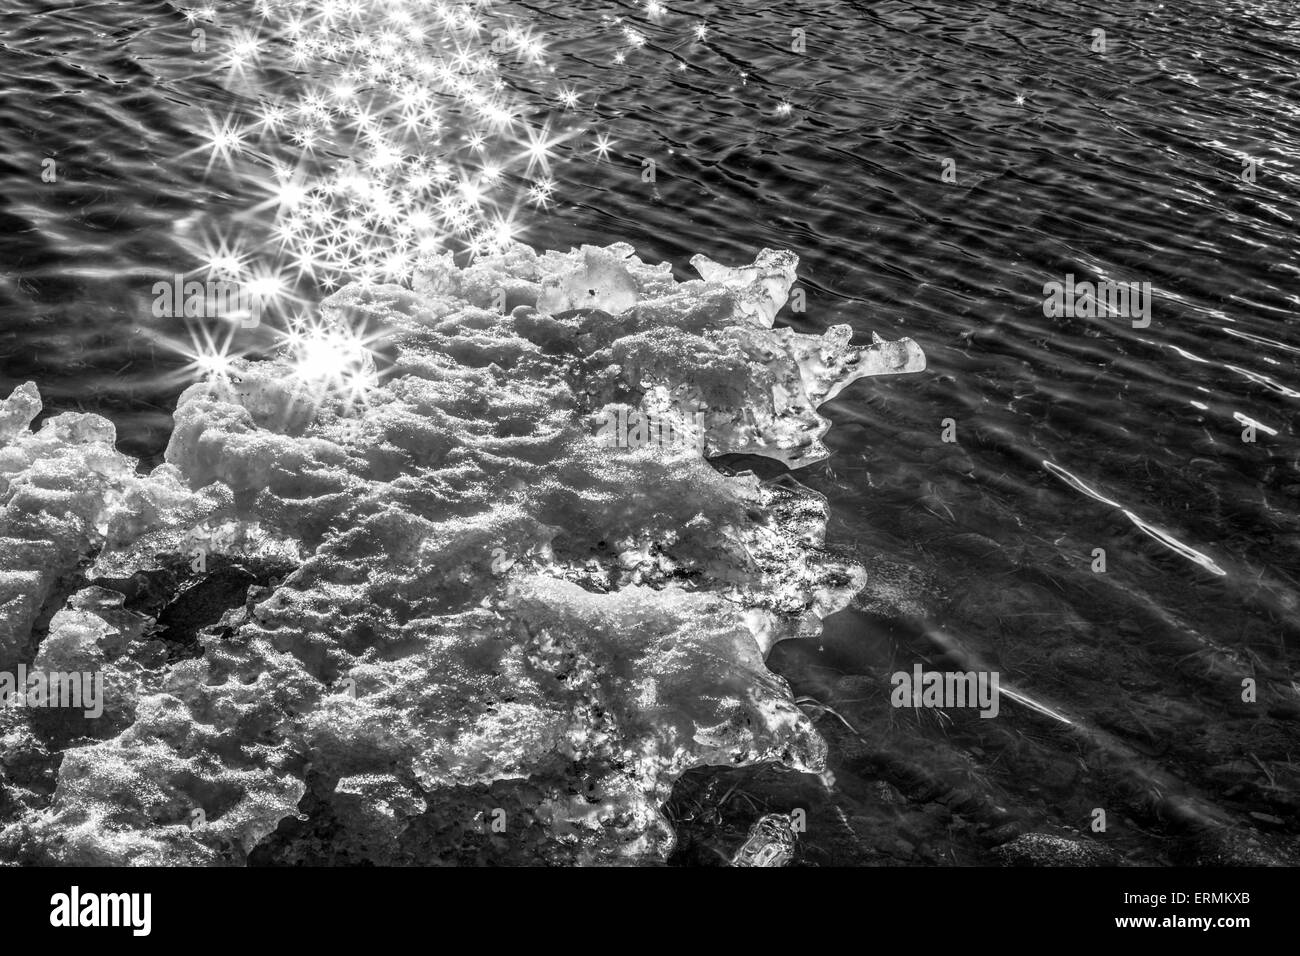 Brilla sul mare di acqua e ghiaccio fondente in Alaska in bianco e nero. Foto Stock